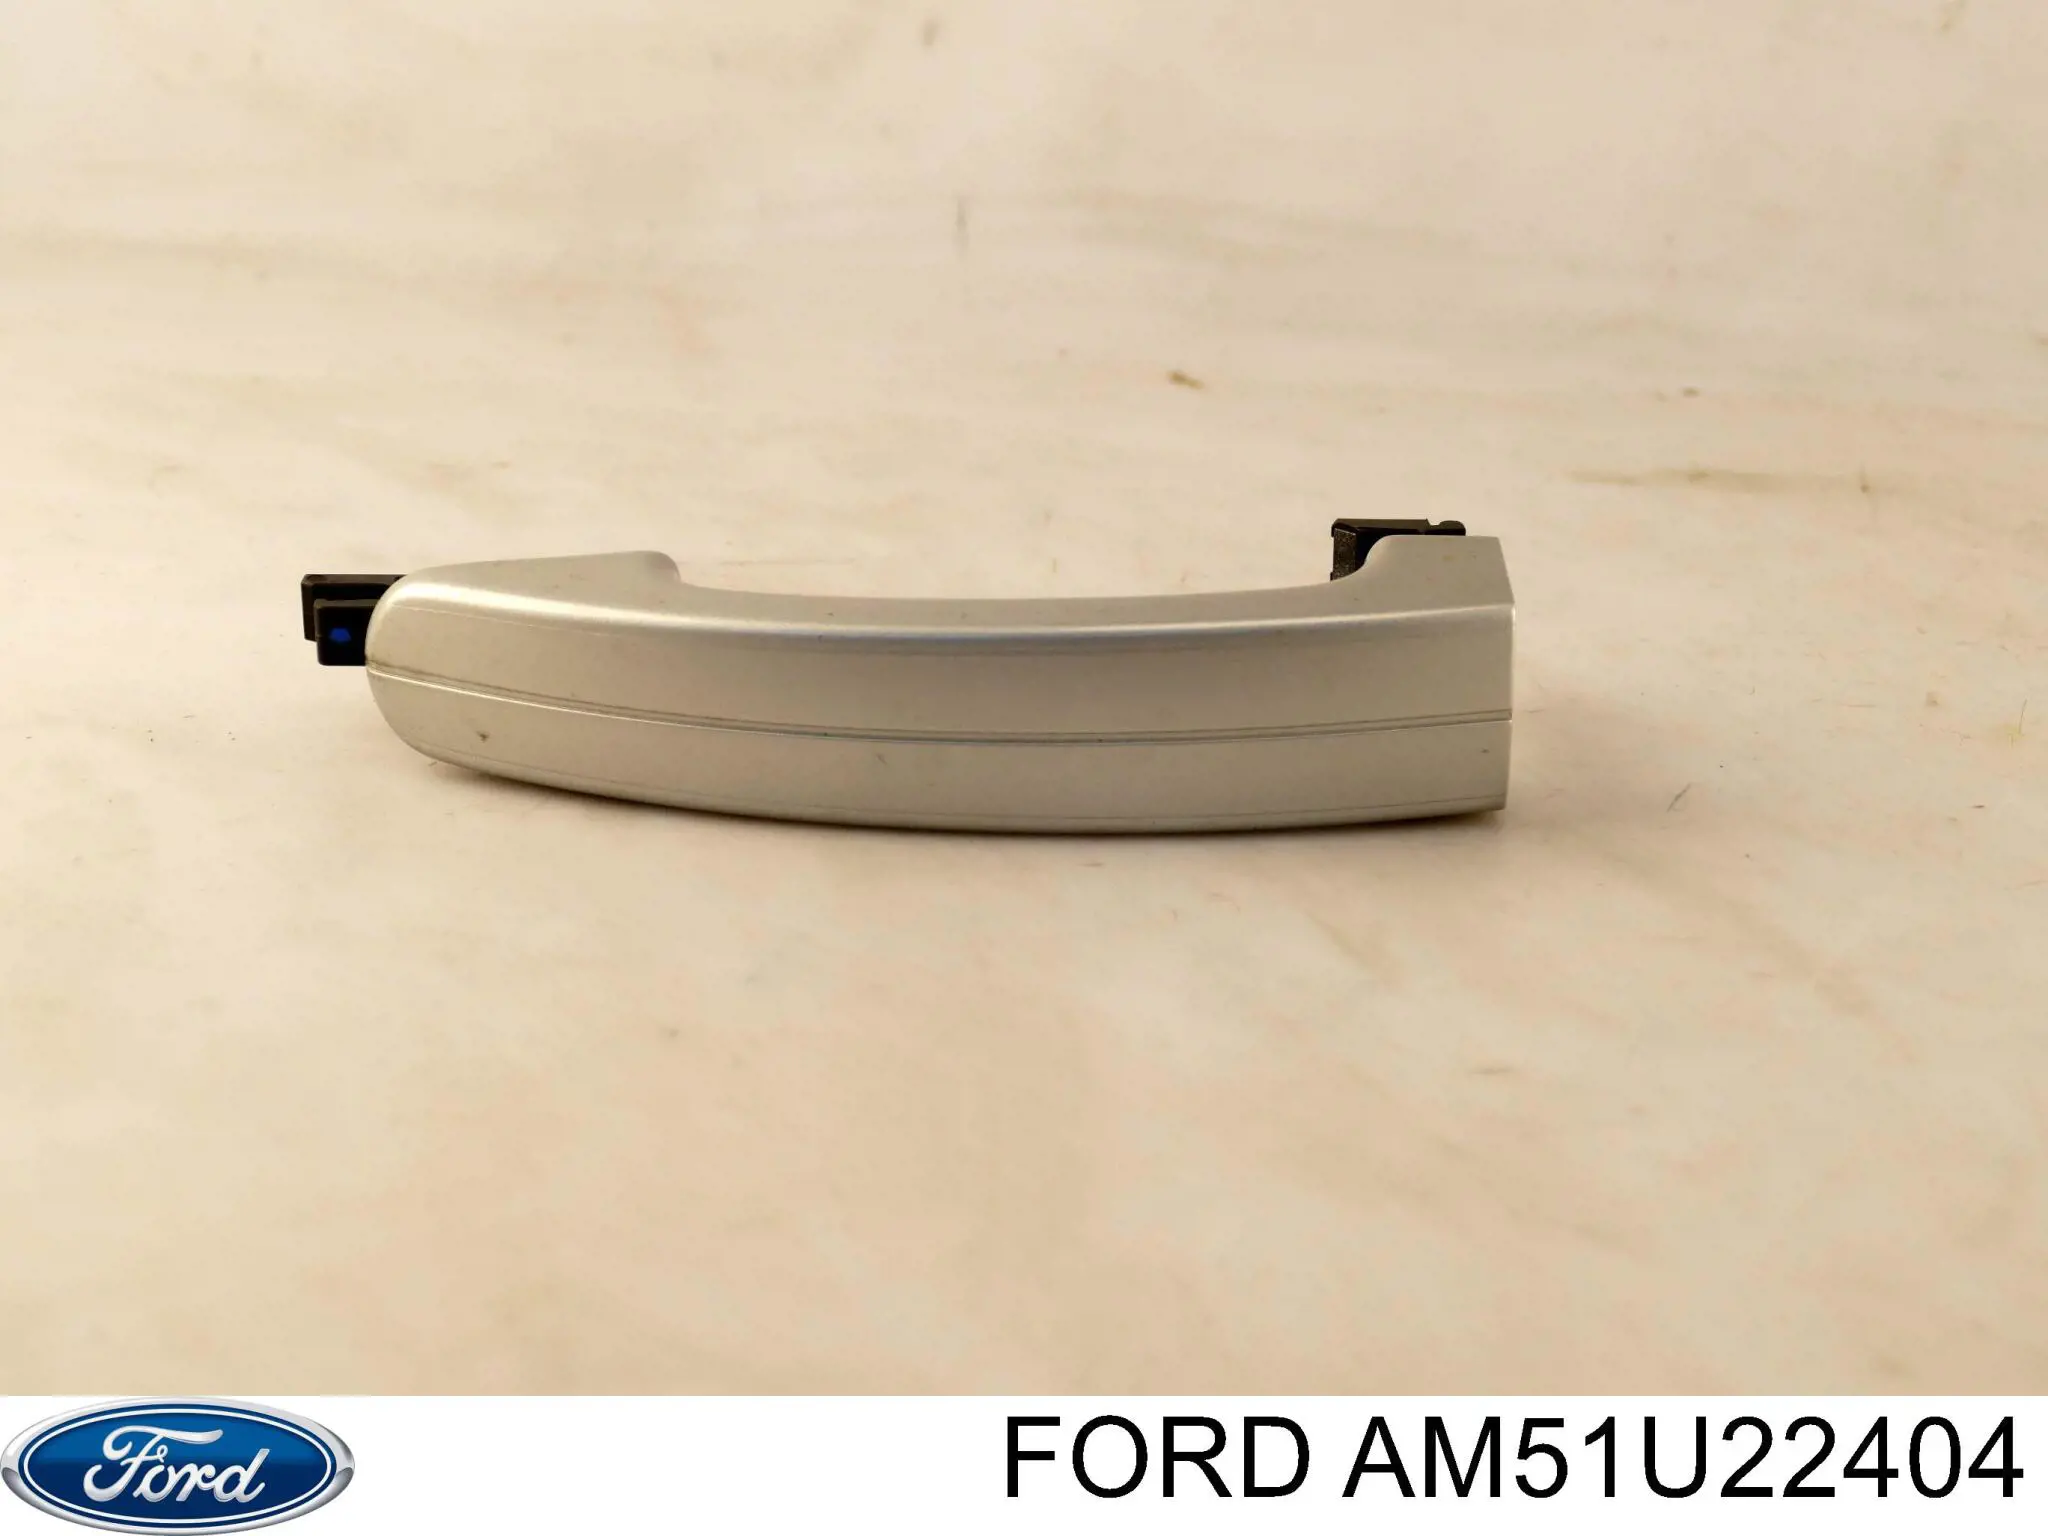 AM51U22404 Ford maçaneta externa da porta dianteira